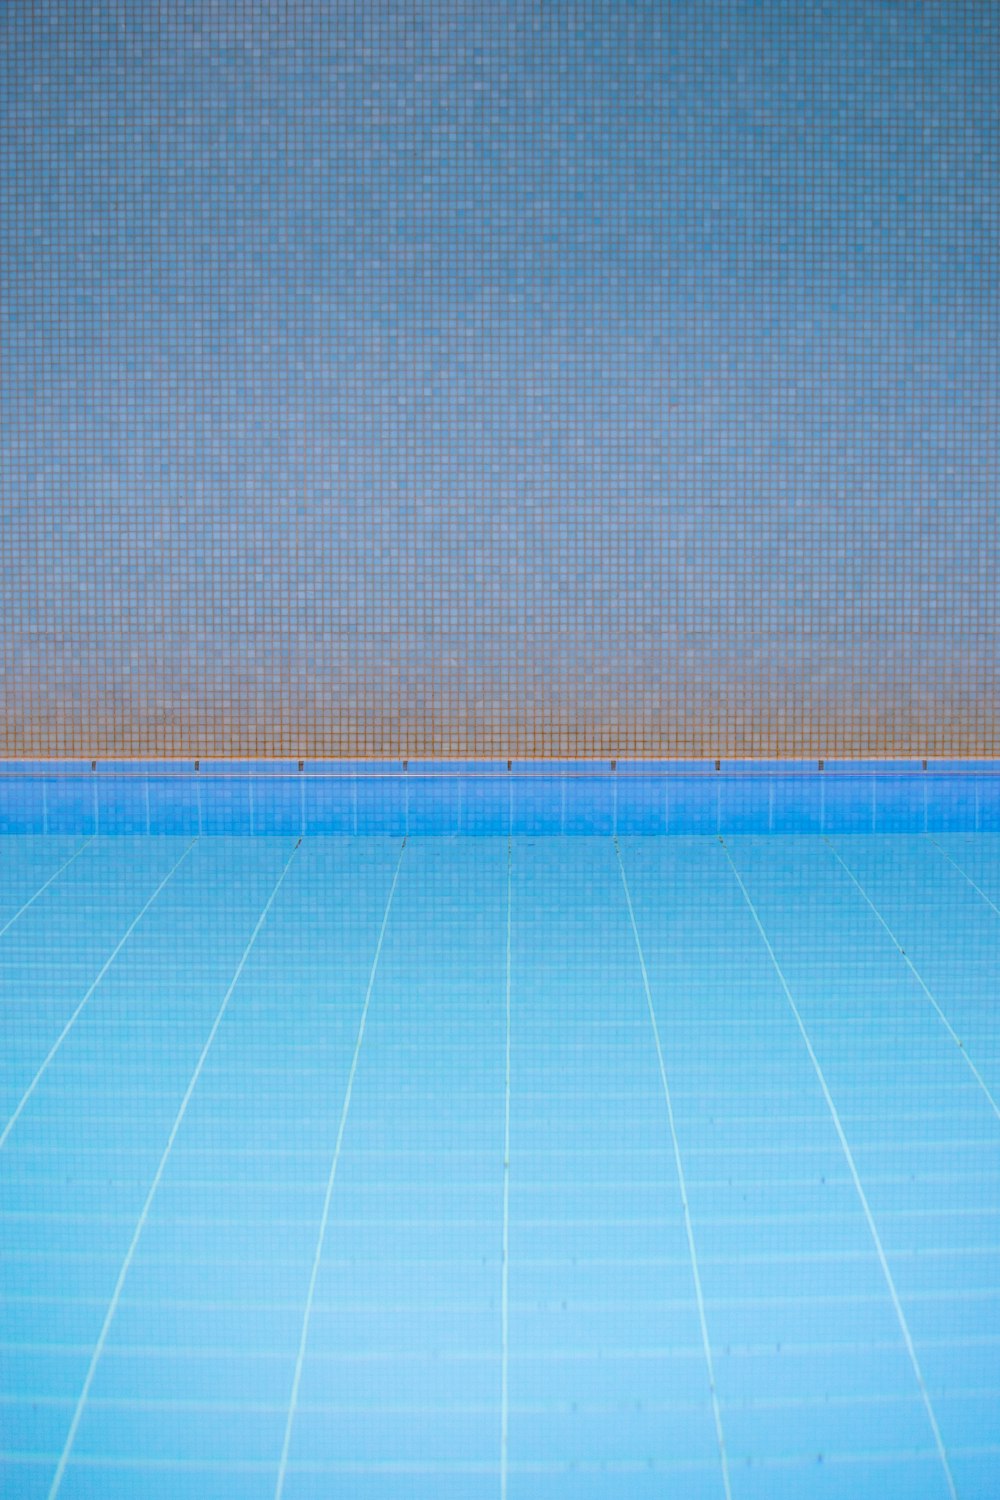 青いタイル張りの床の空のスイミングプール